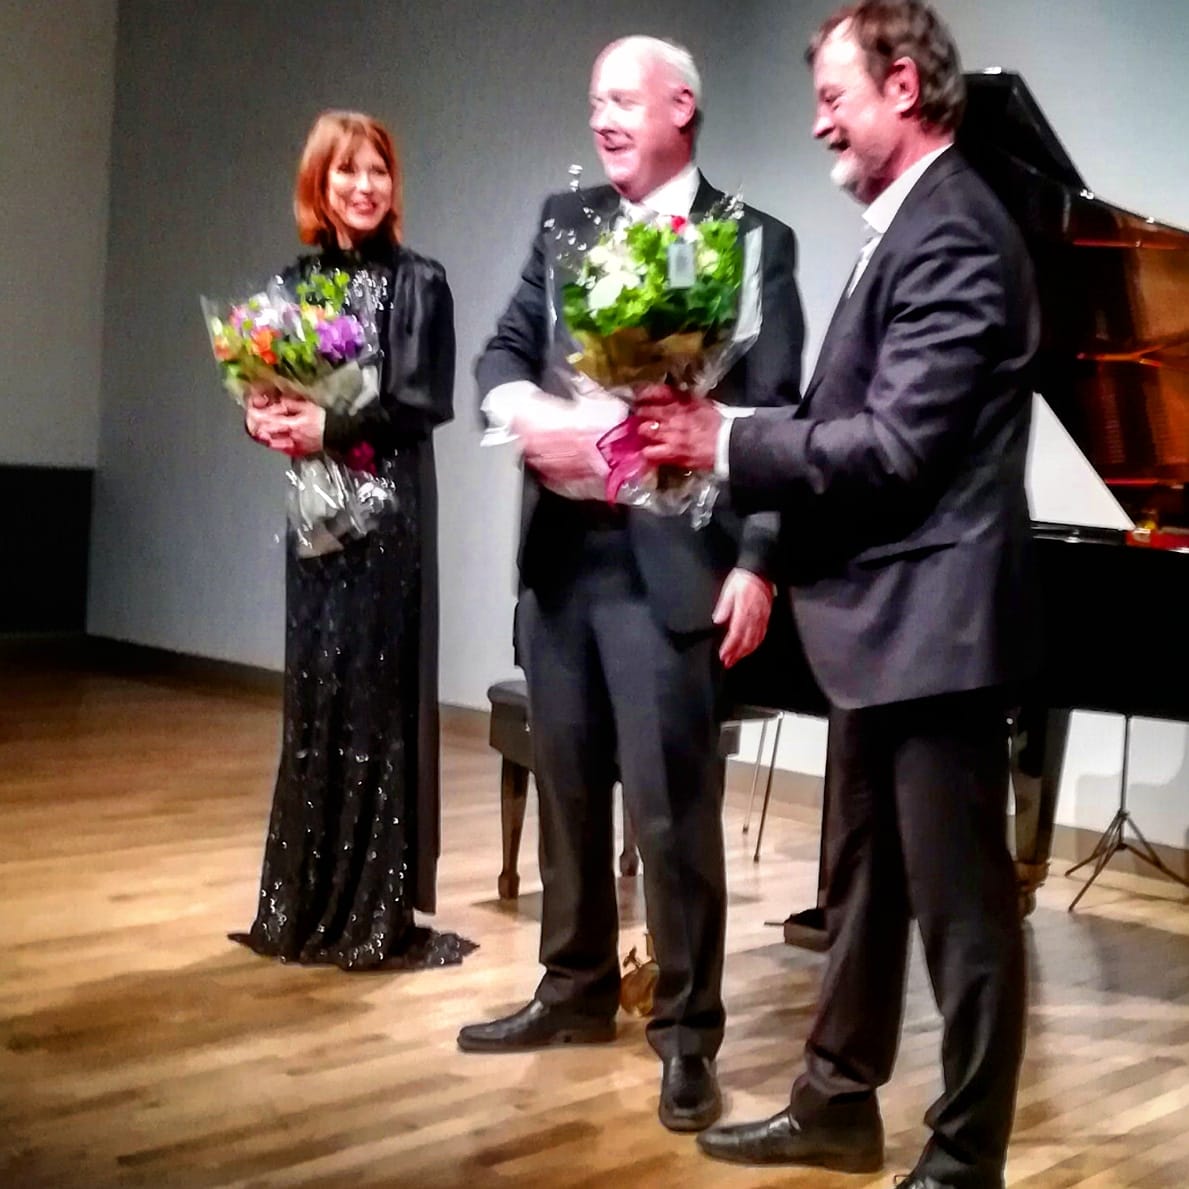 デンマーク人ピアニストKatrine Gislinge氏とデンマーク人の現代音楽の作曲家Bent Sørensen氏?二人をお祝いするスヴェイネ大使。